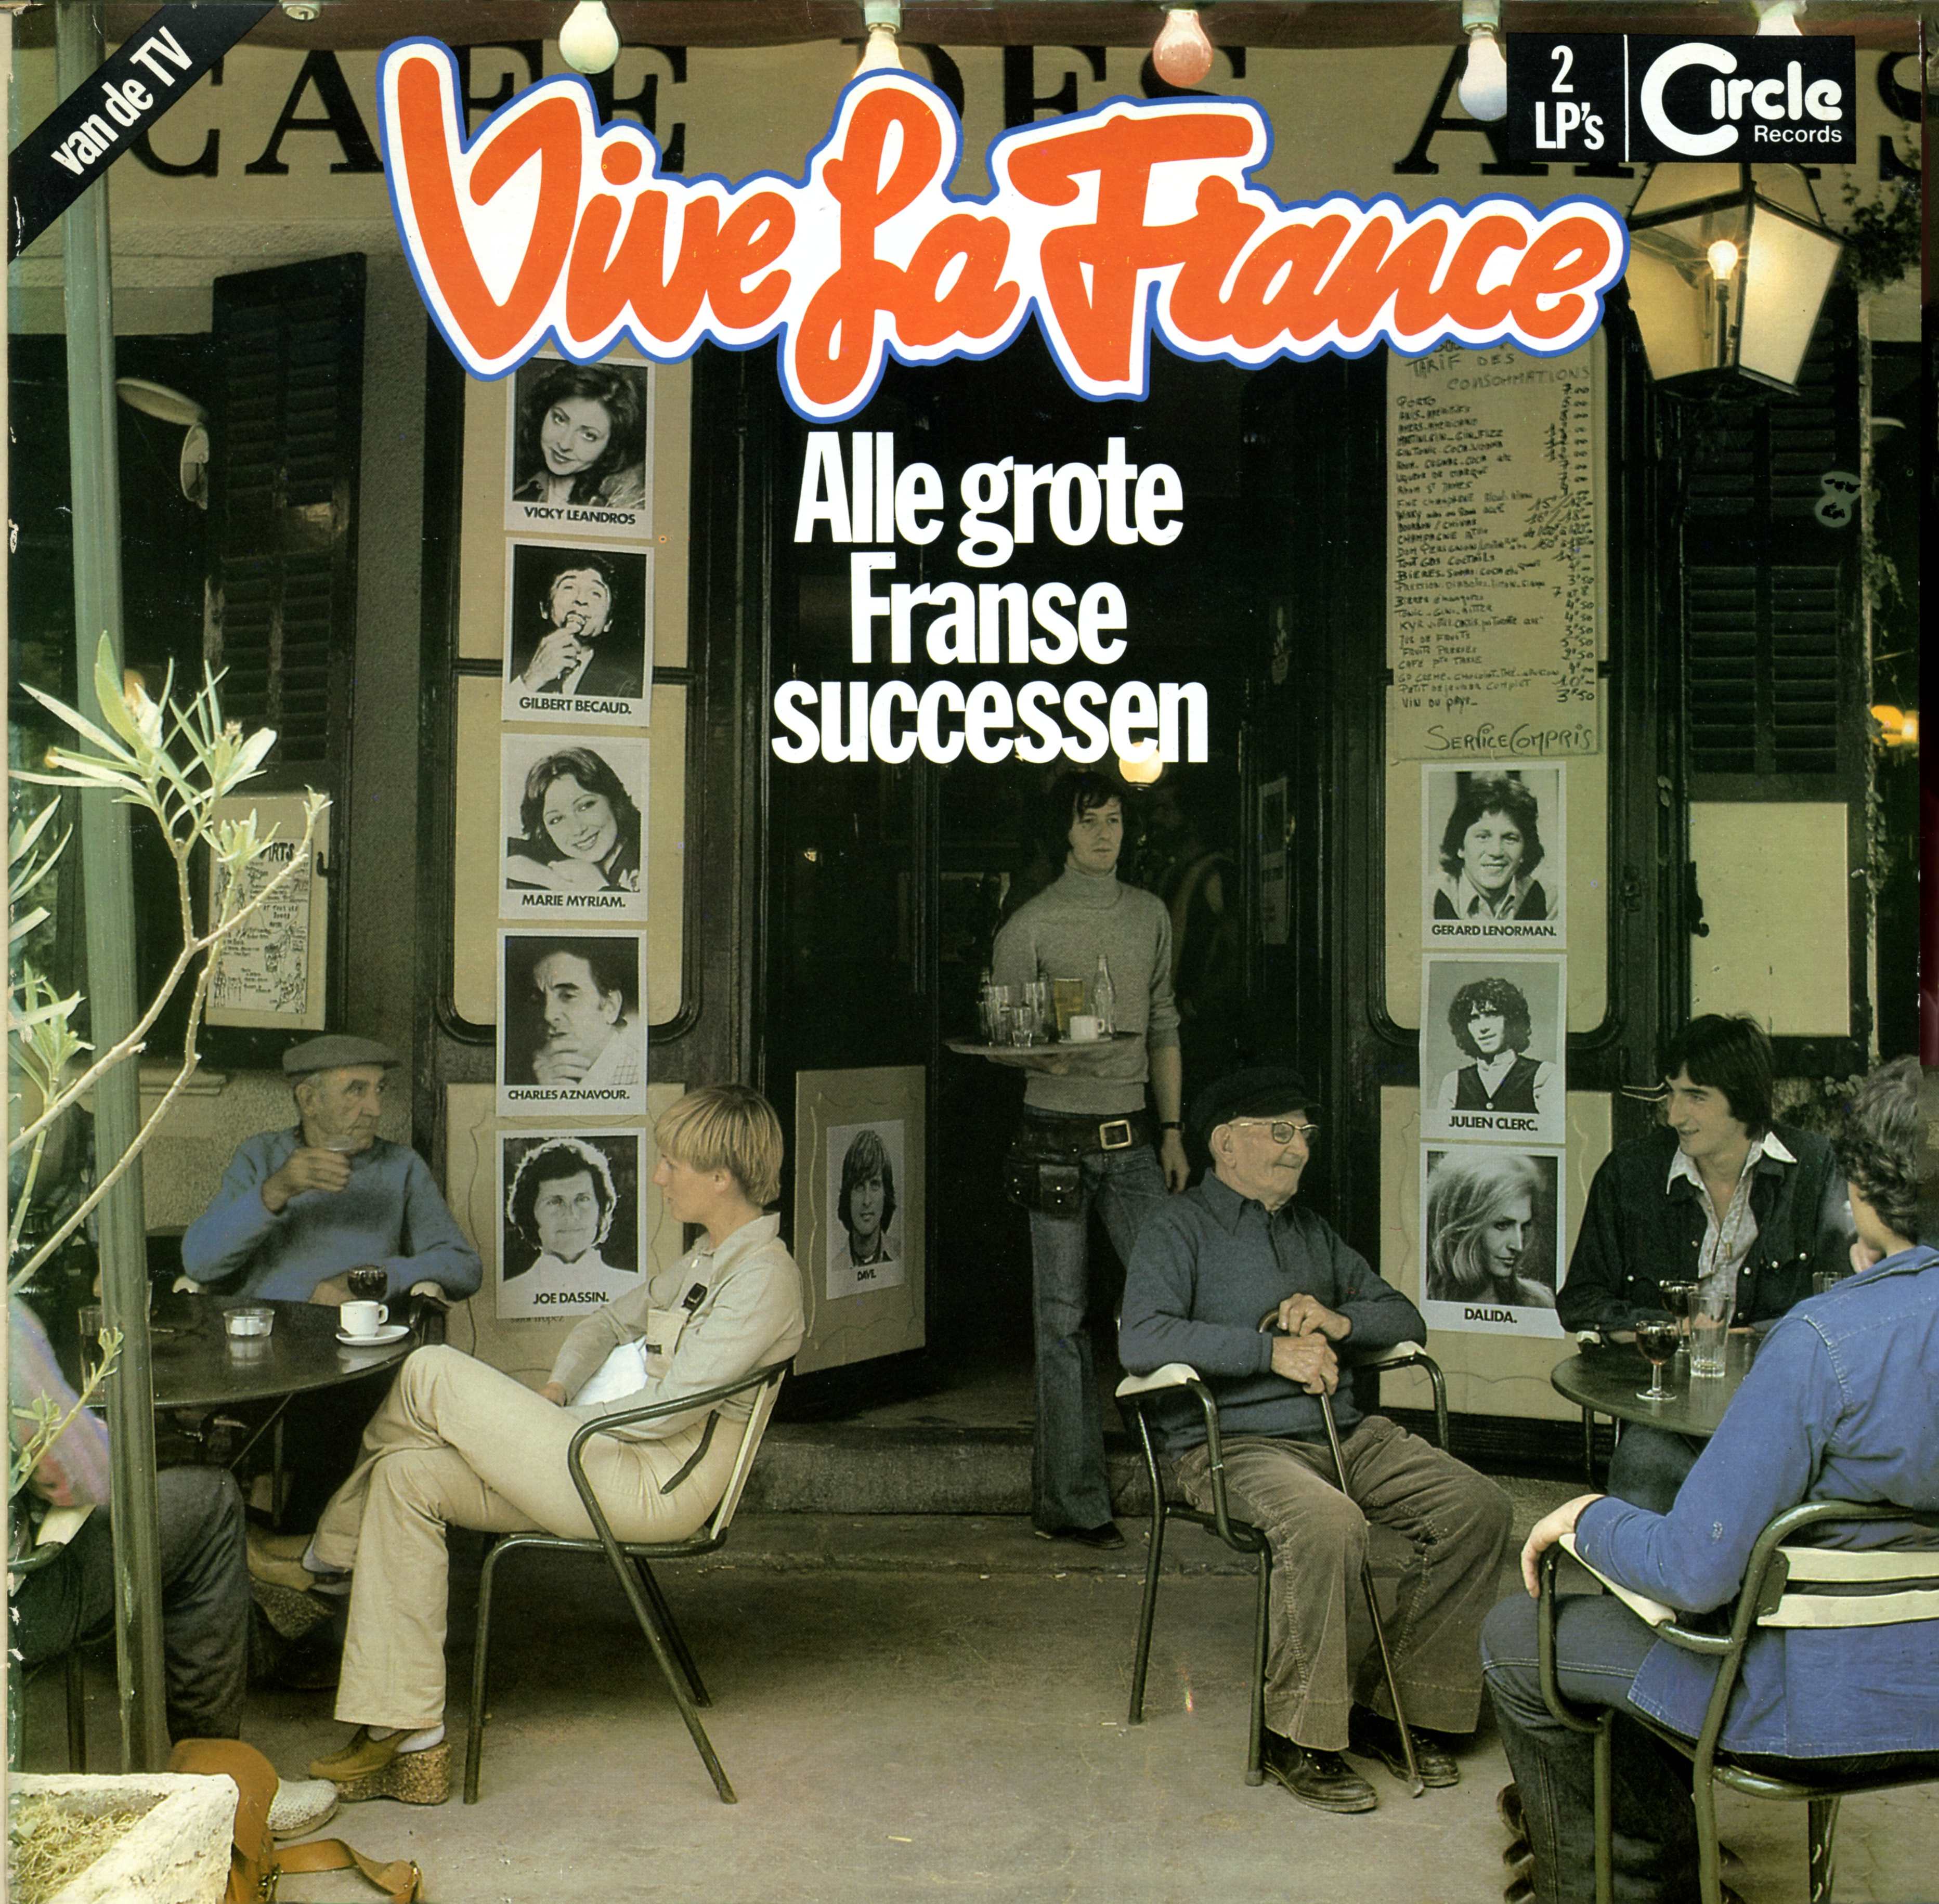 Vive La France - Alle Grote Franse Successen in DTS-wav (op verzoek)